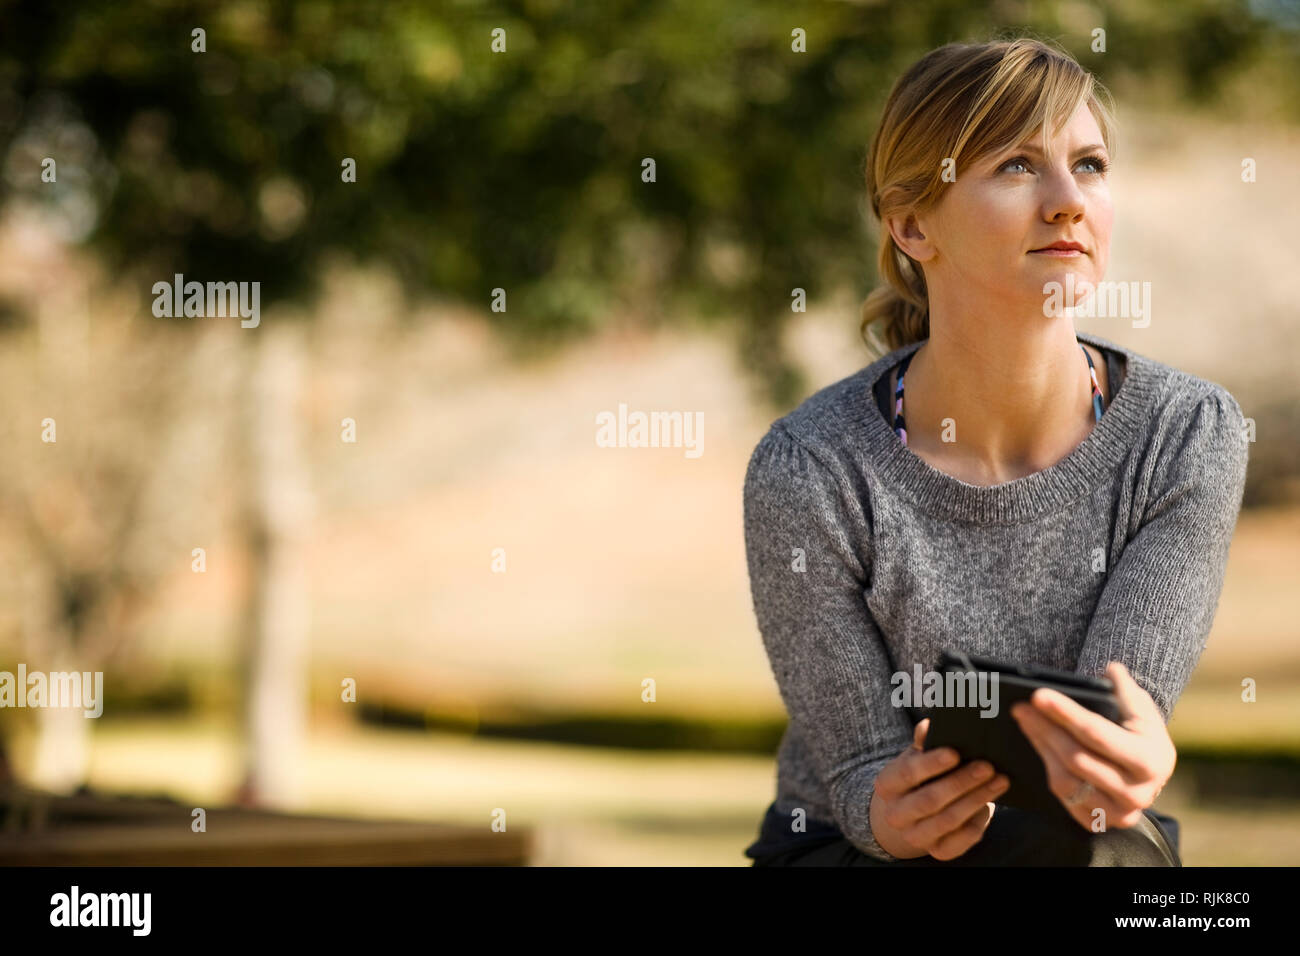 Junge Frau in einem sonnigen Garten sieht aus Ihrem digitalen Tablet und starrt nachdenklich in die Ferne. Stockfoto